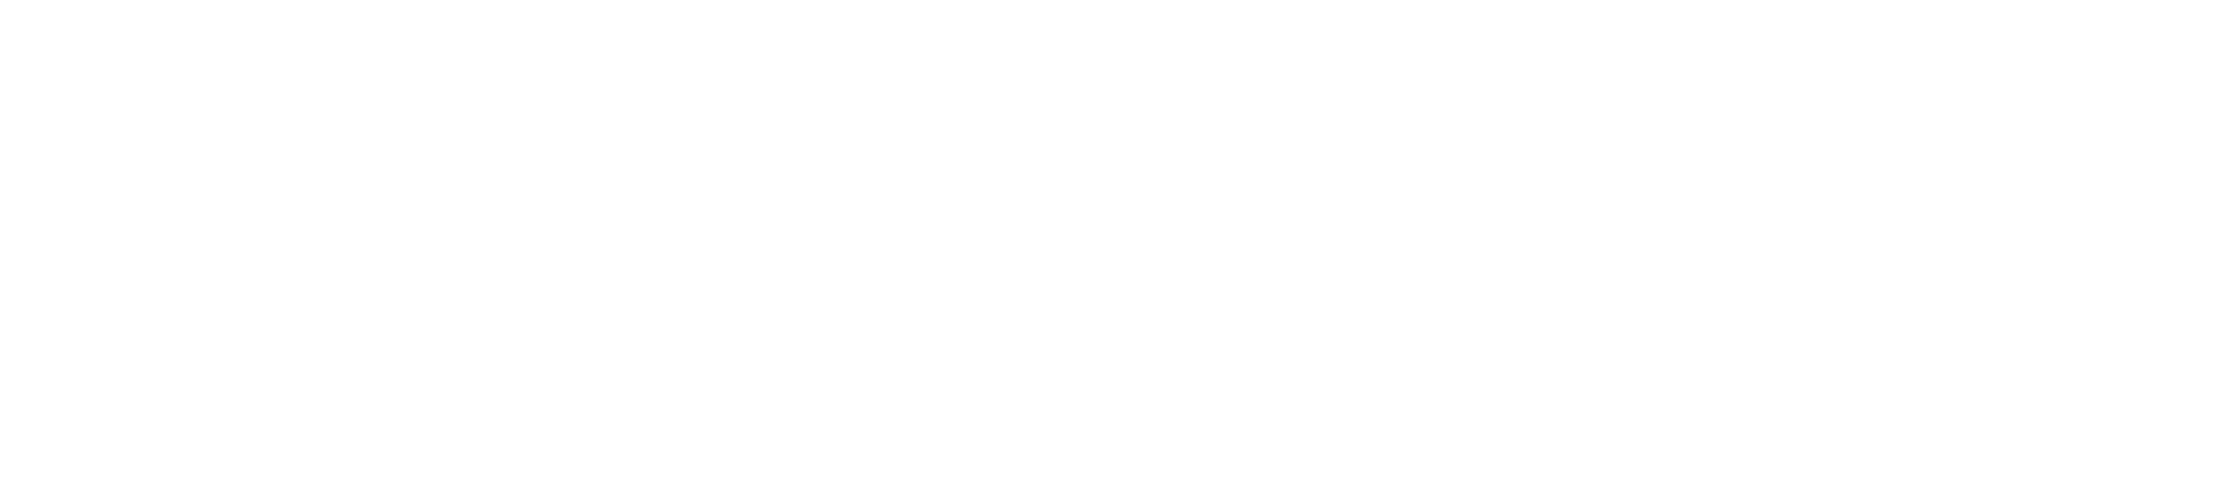 ASSEMBLY Summer 2023 logo